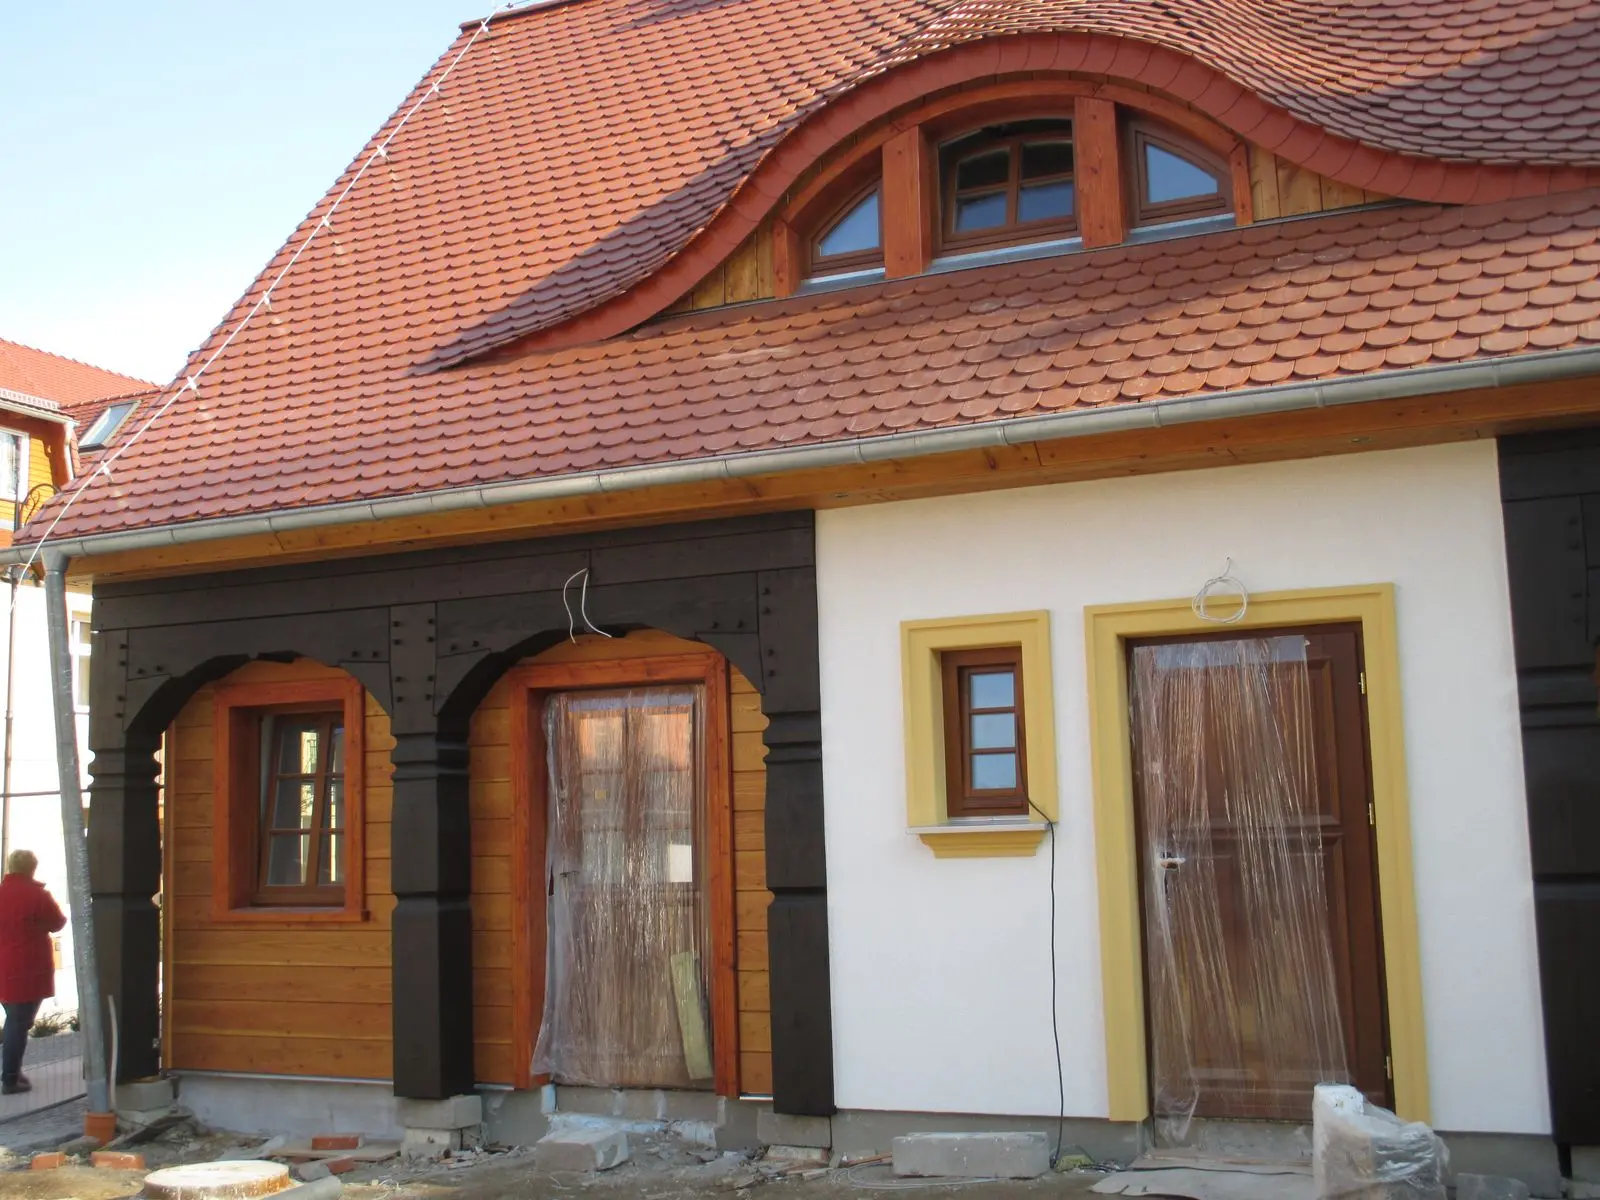 Nowy dom przysłupowy podczas budowy (2015 r.) w Świeradowie-Zdroju przy ulicy Zdrojowej wg proj. Adama Cebuli (fot. autor: Adam Cebula)